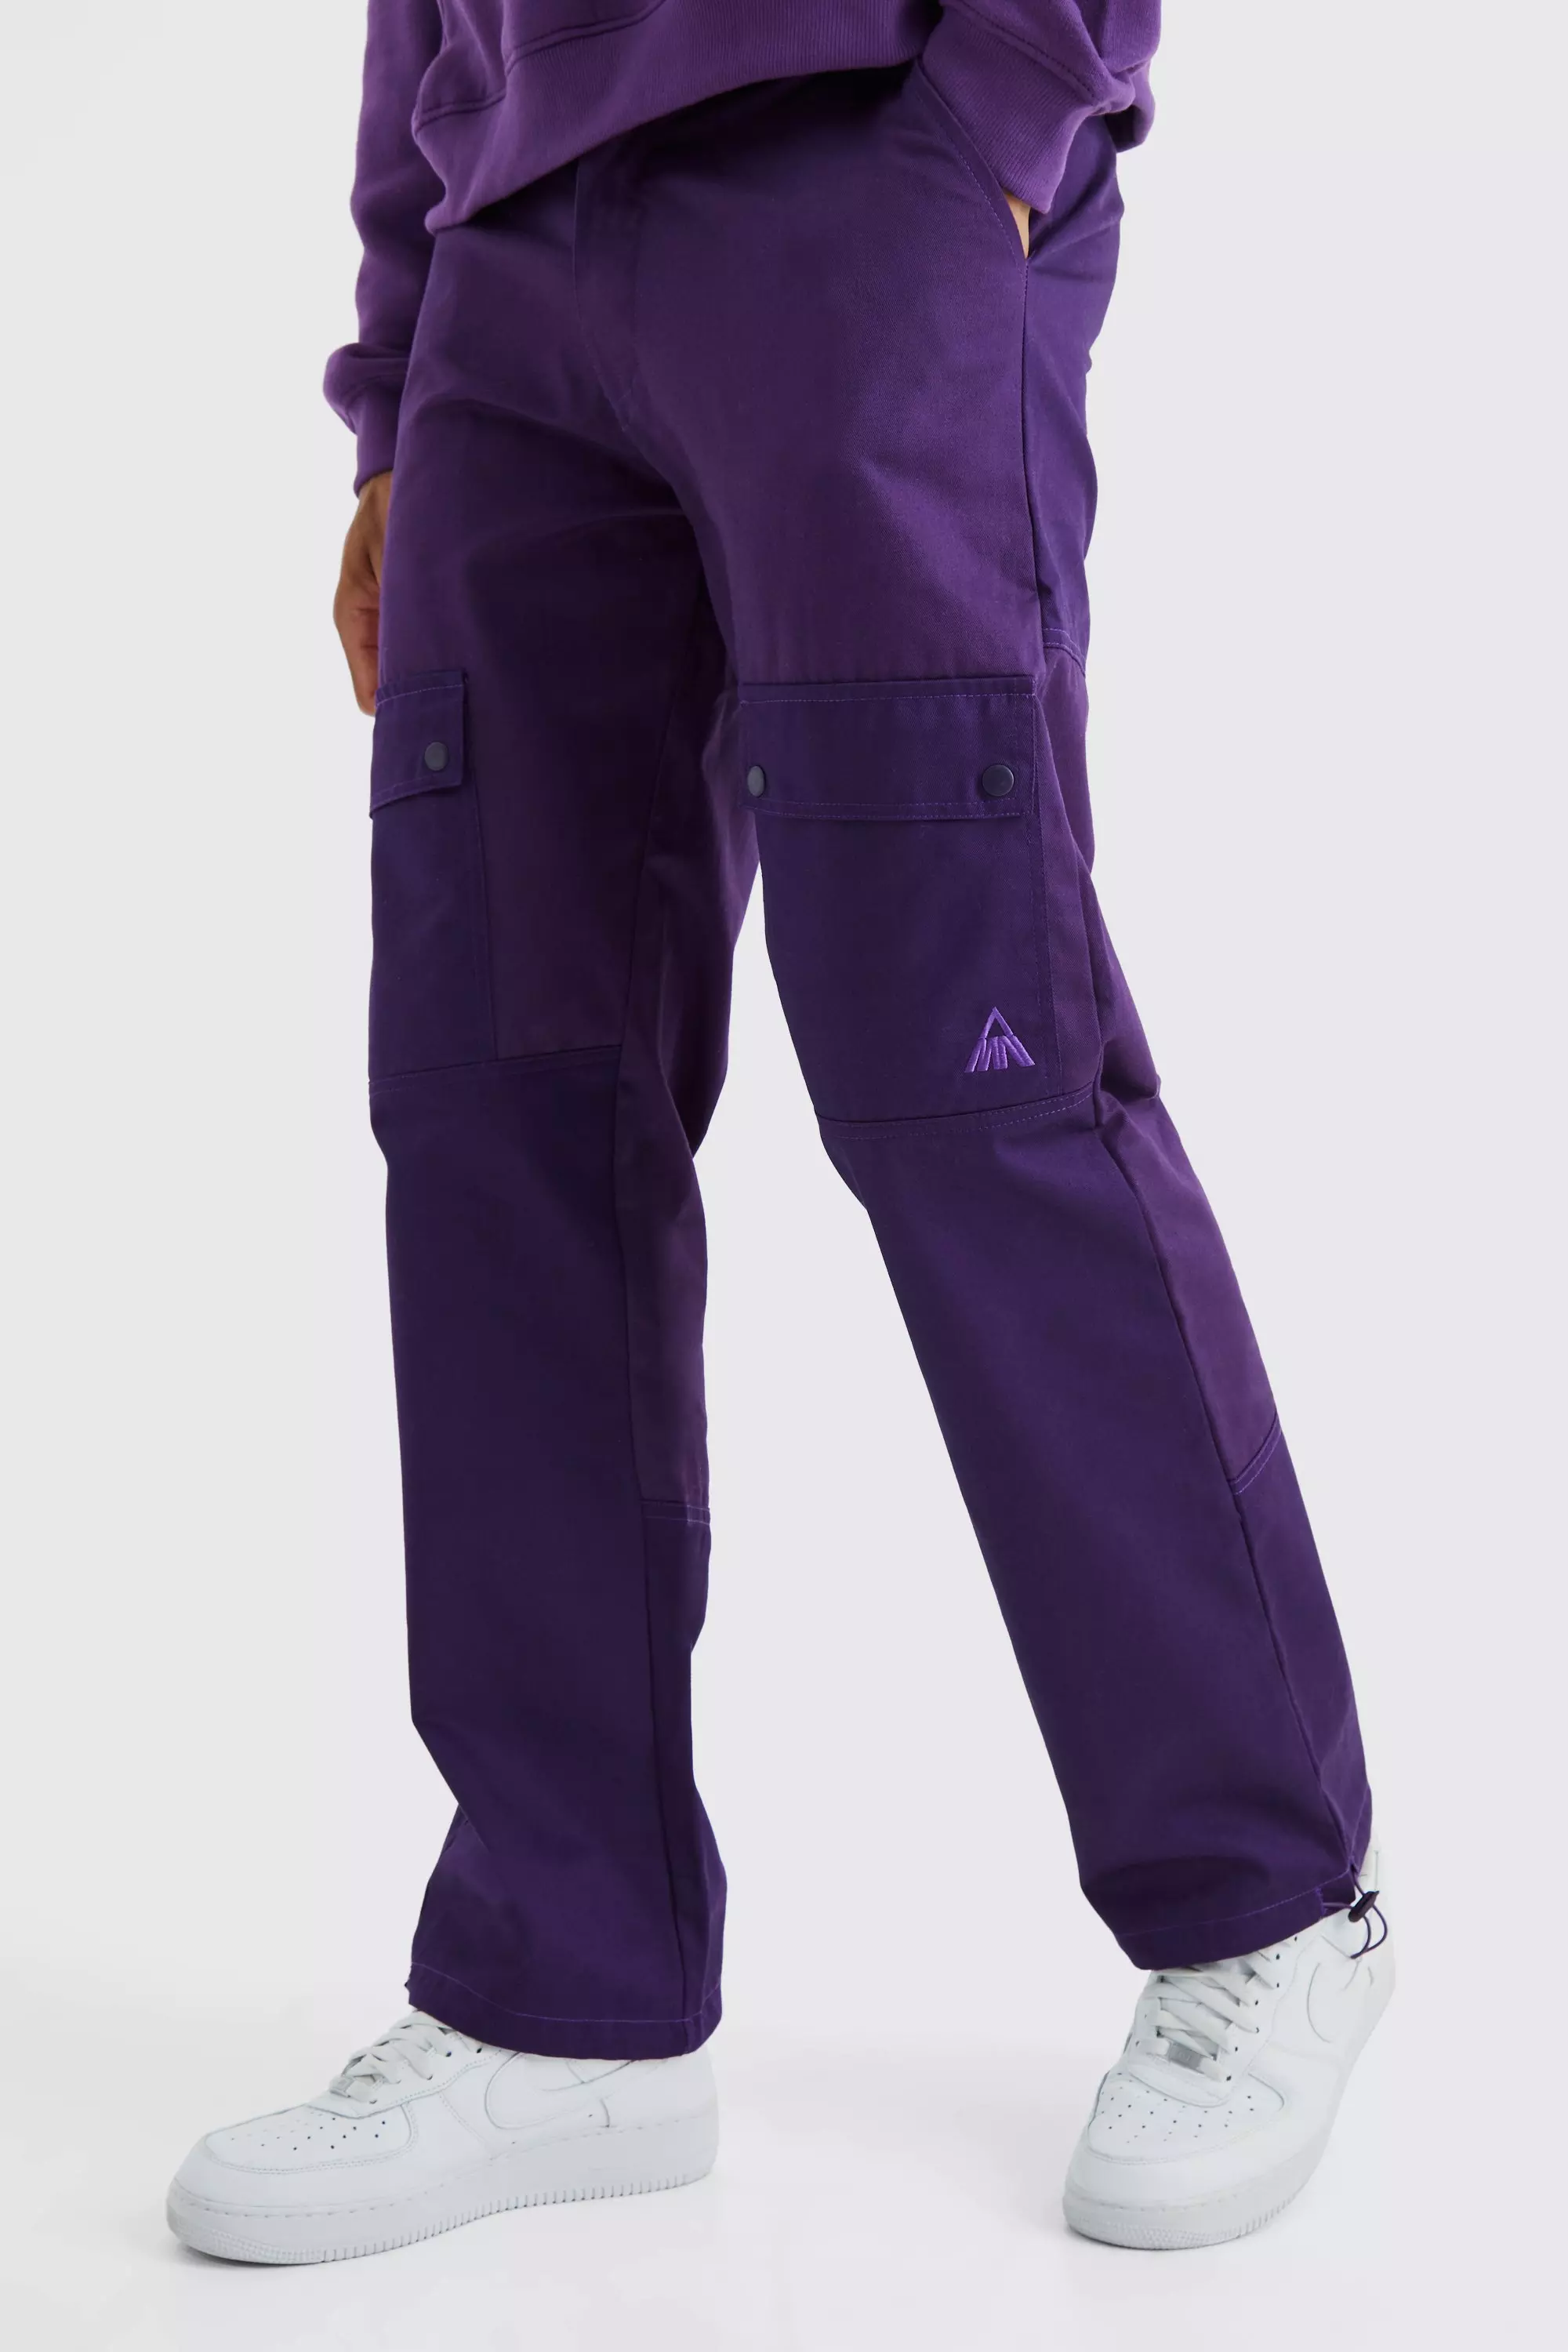 Purple Cinch Strap Cargo Pants by Blumarine on Sale